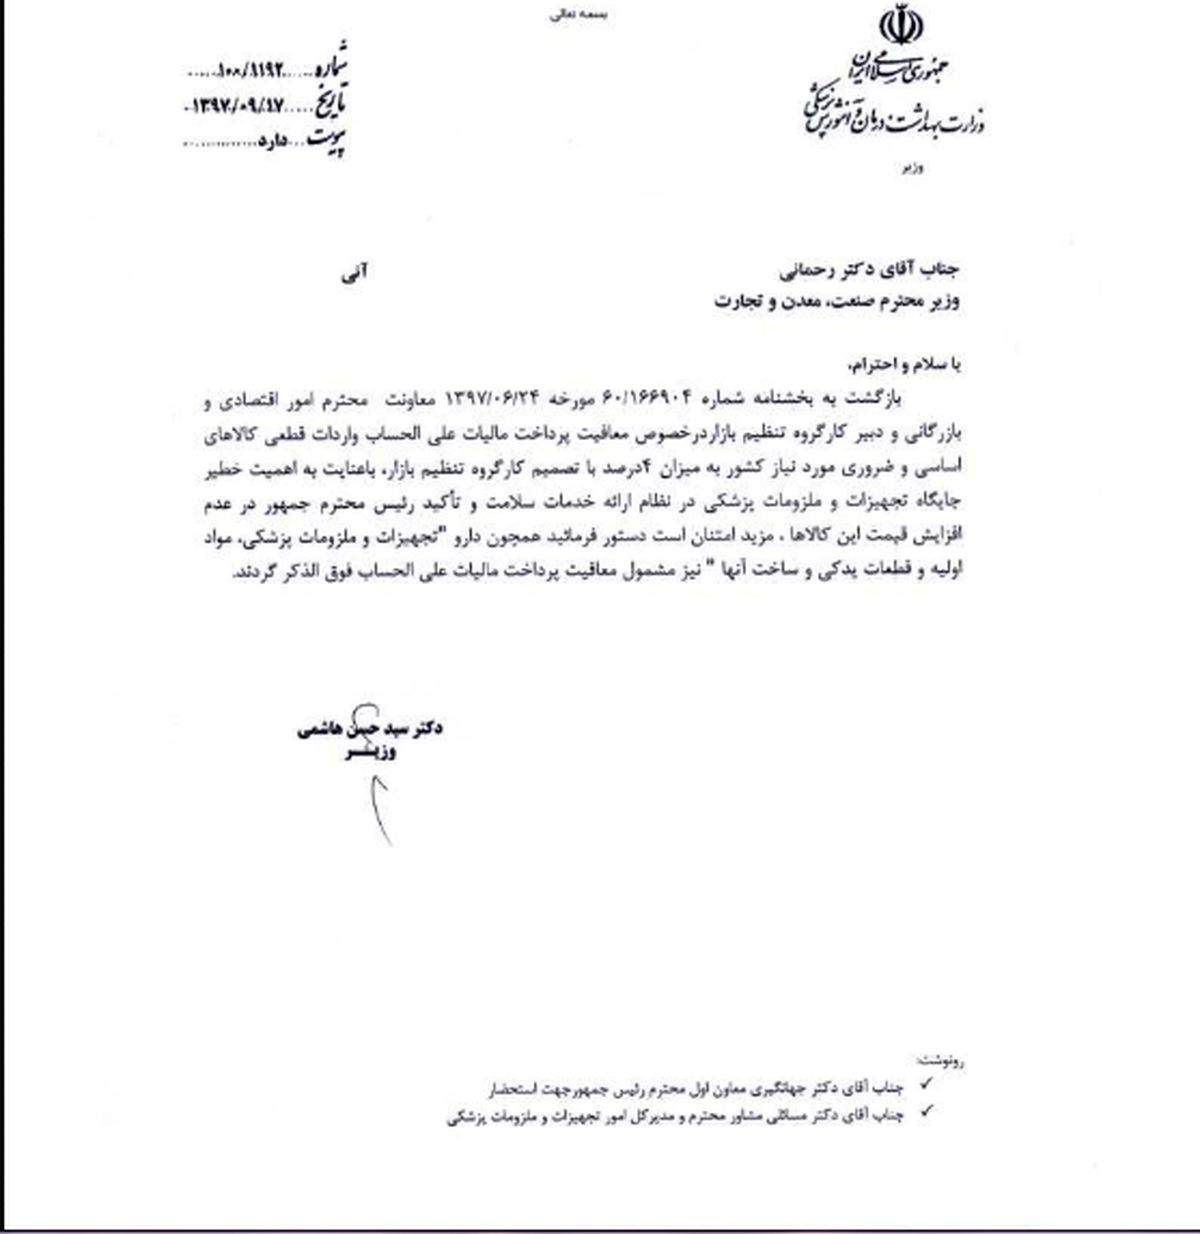 درخواست معافیت پرداخت مالیات علی الحساب واردات قطعی تجهیزات پزشکی + سند